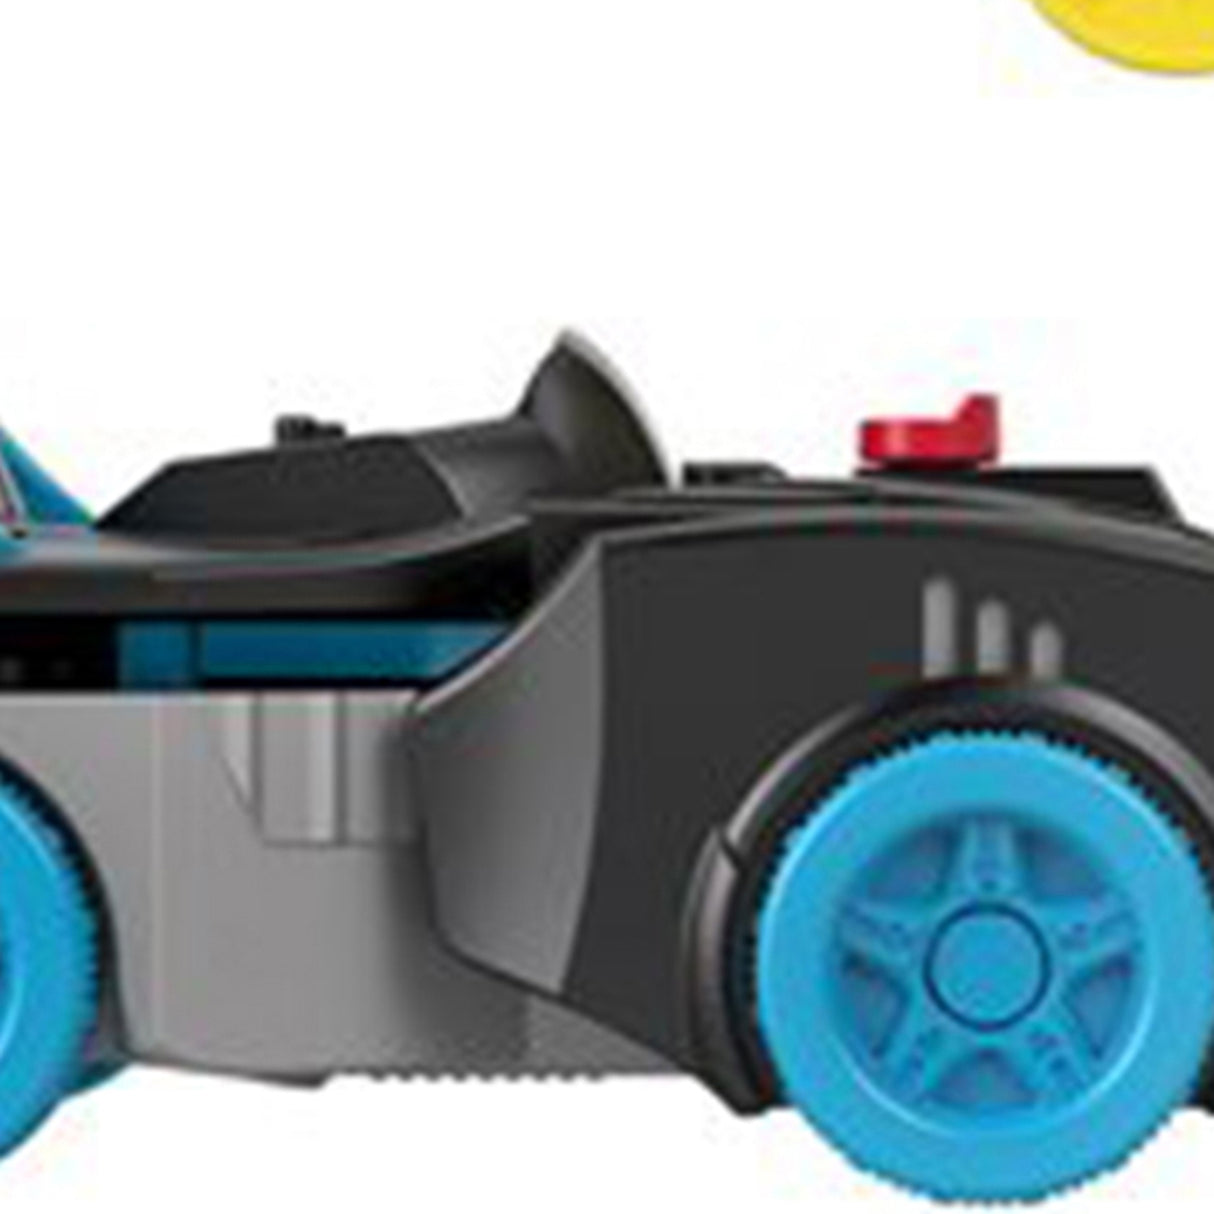 Imaginext DC Super Friends Deluxe Bat-Tech Batman Batmobile Car